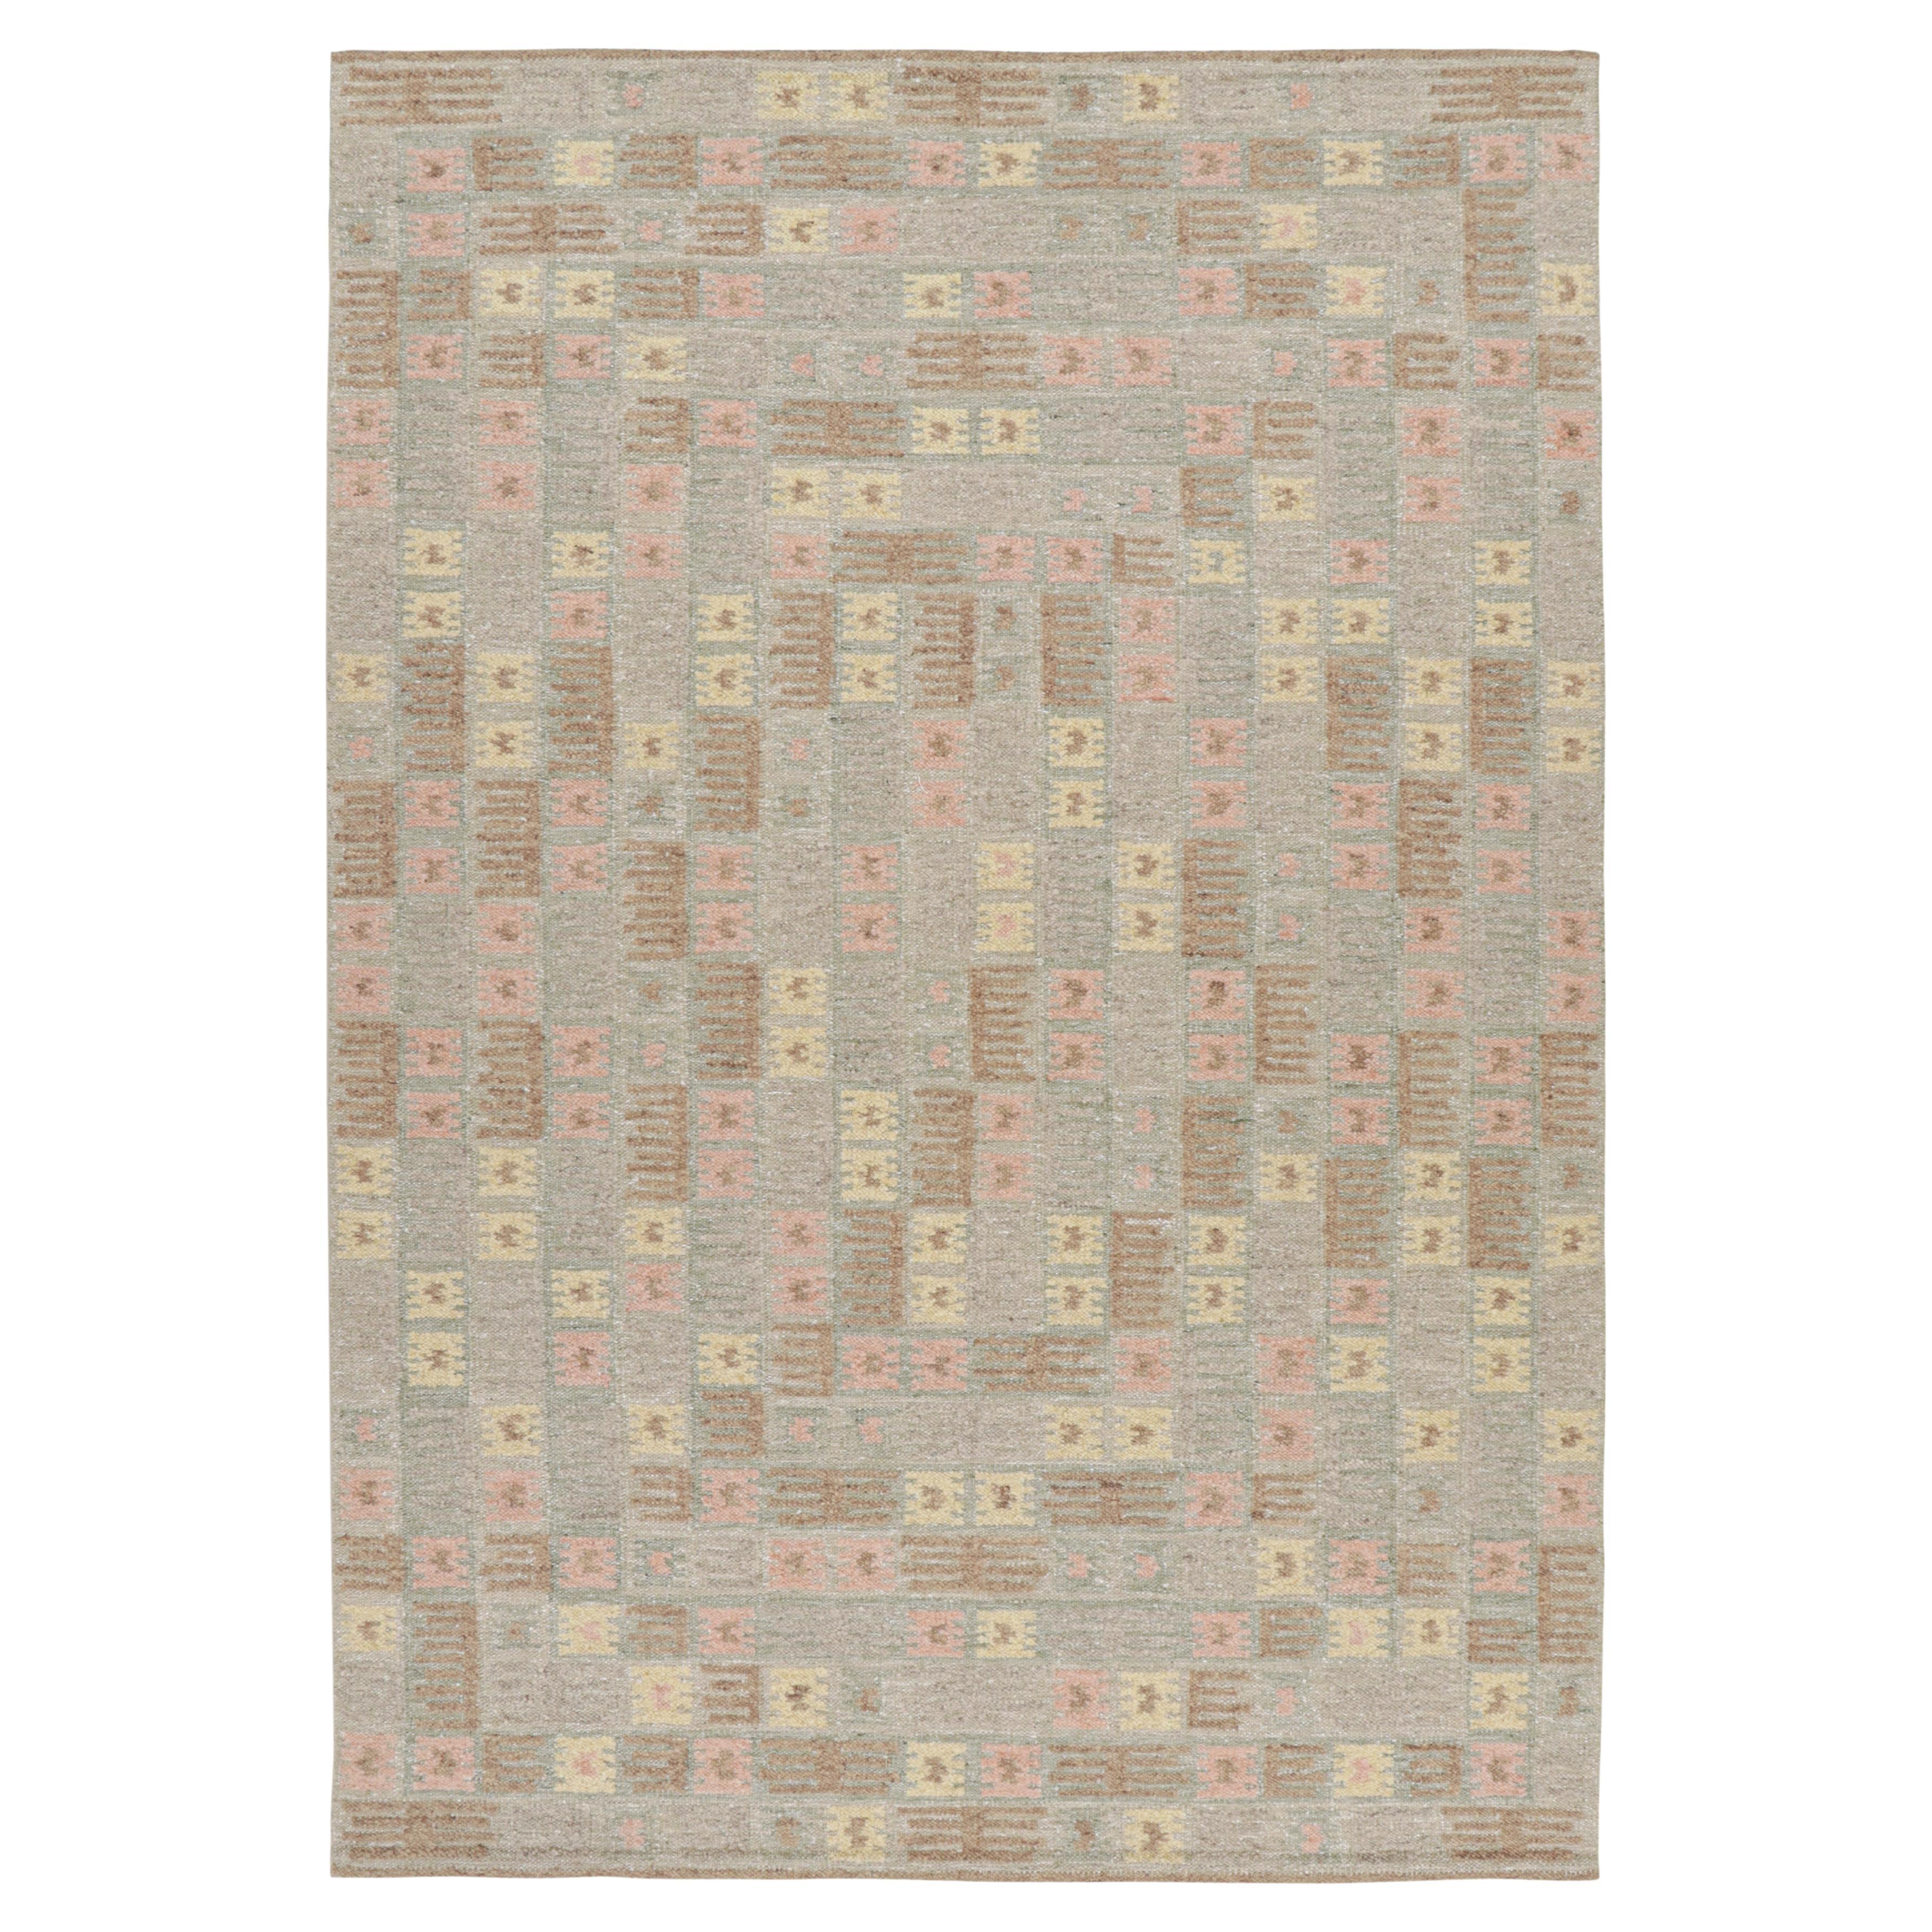 Rug & Kilim's Teppich im skandinavischen Stil mit polychromen geometrischen Mustern